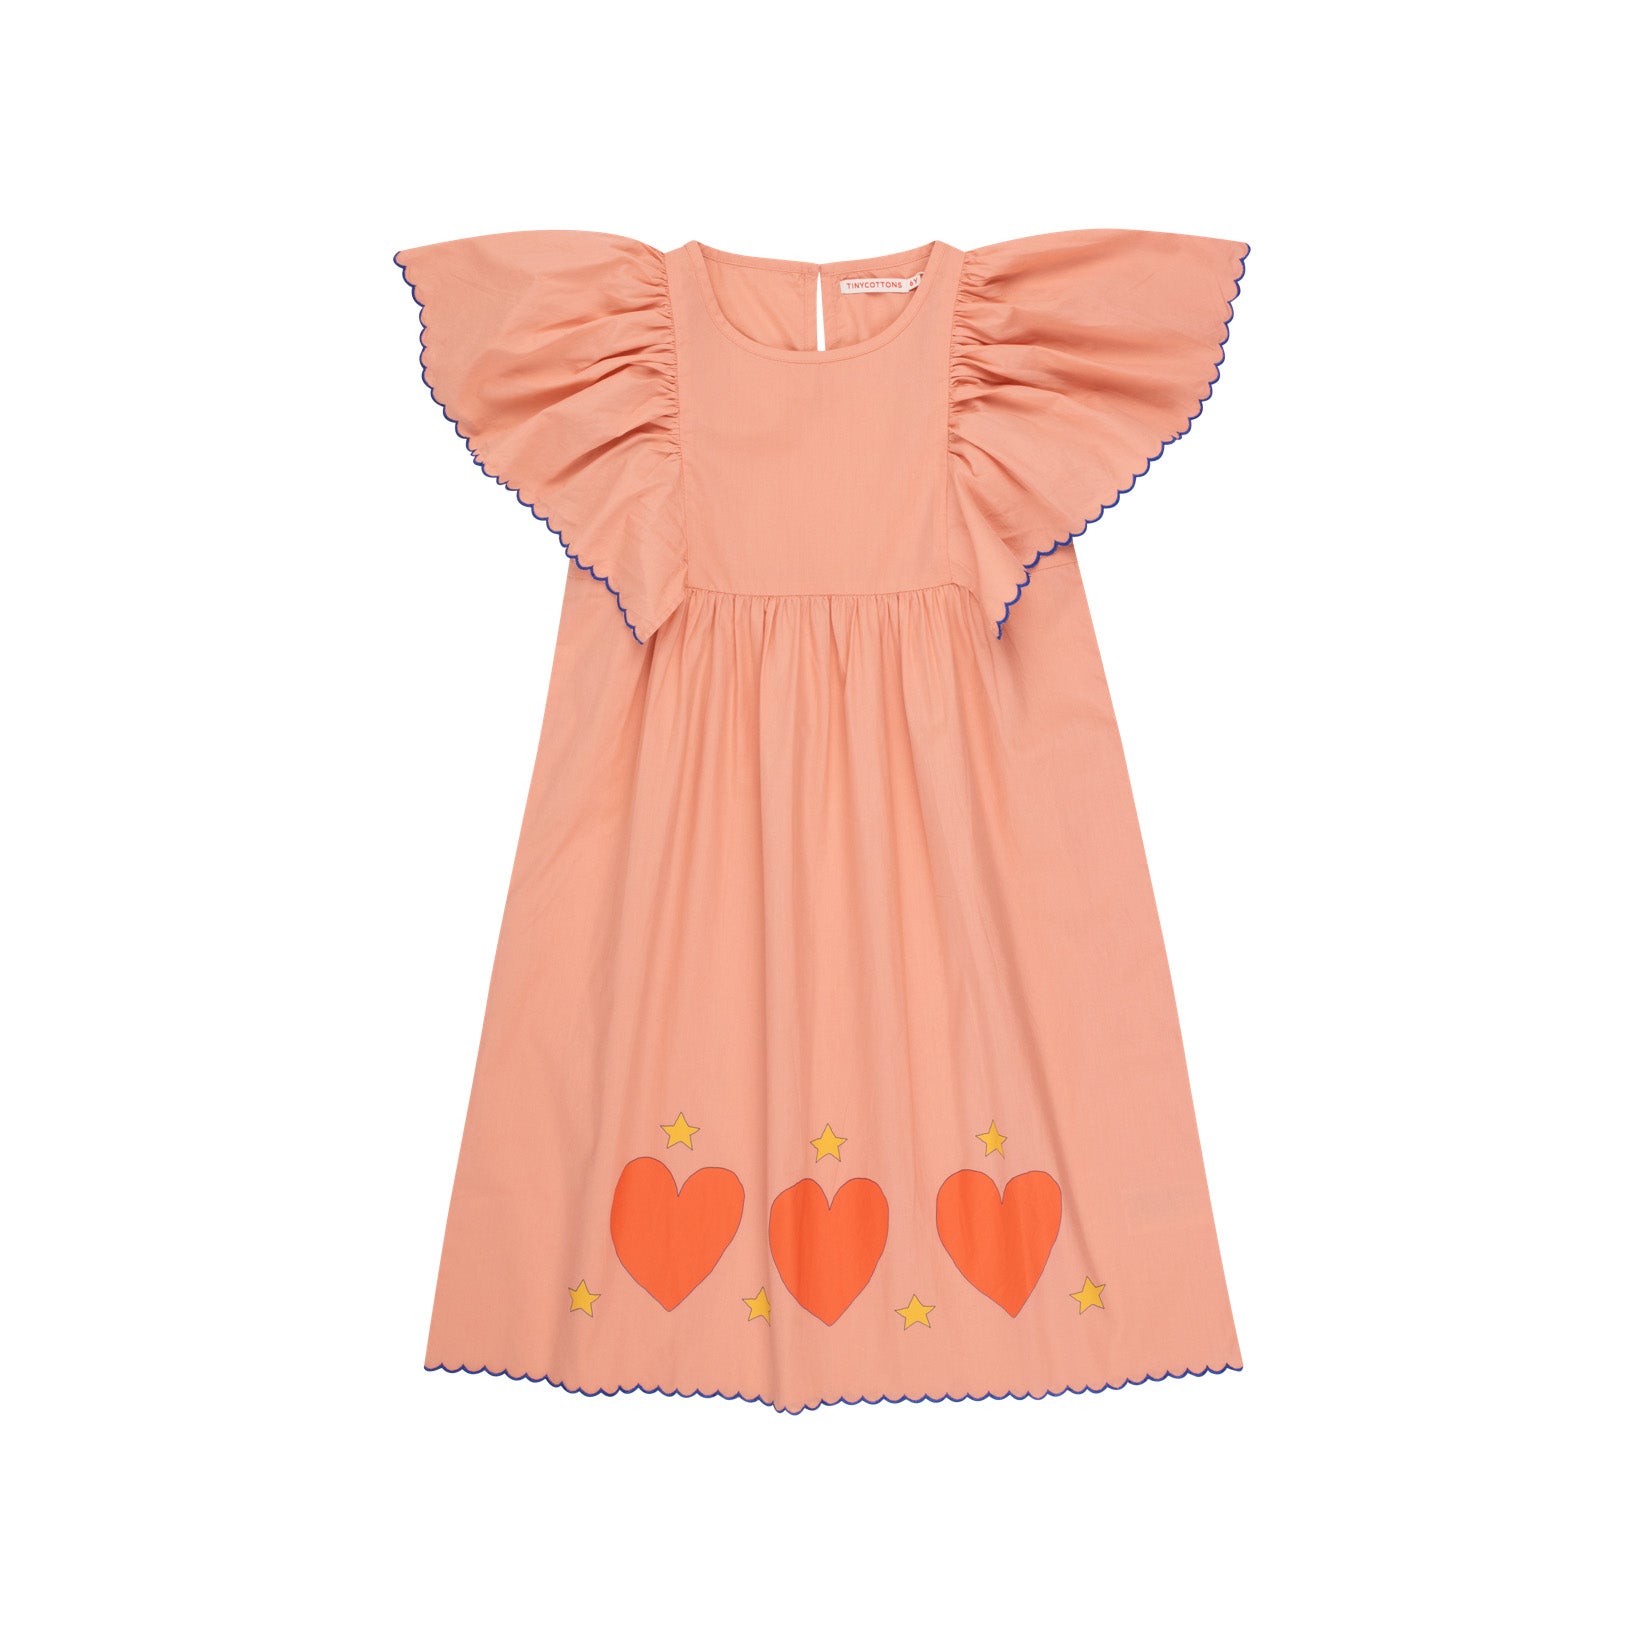 Girls Apricot Cotton Dress